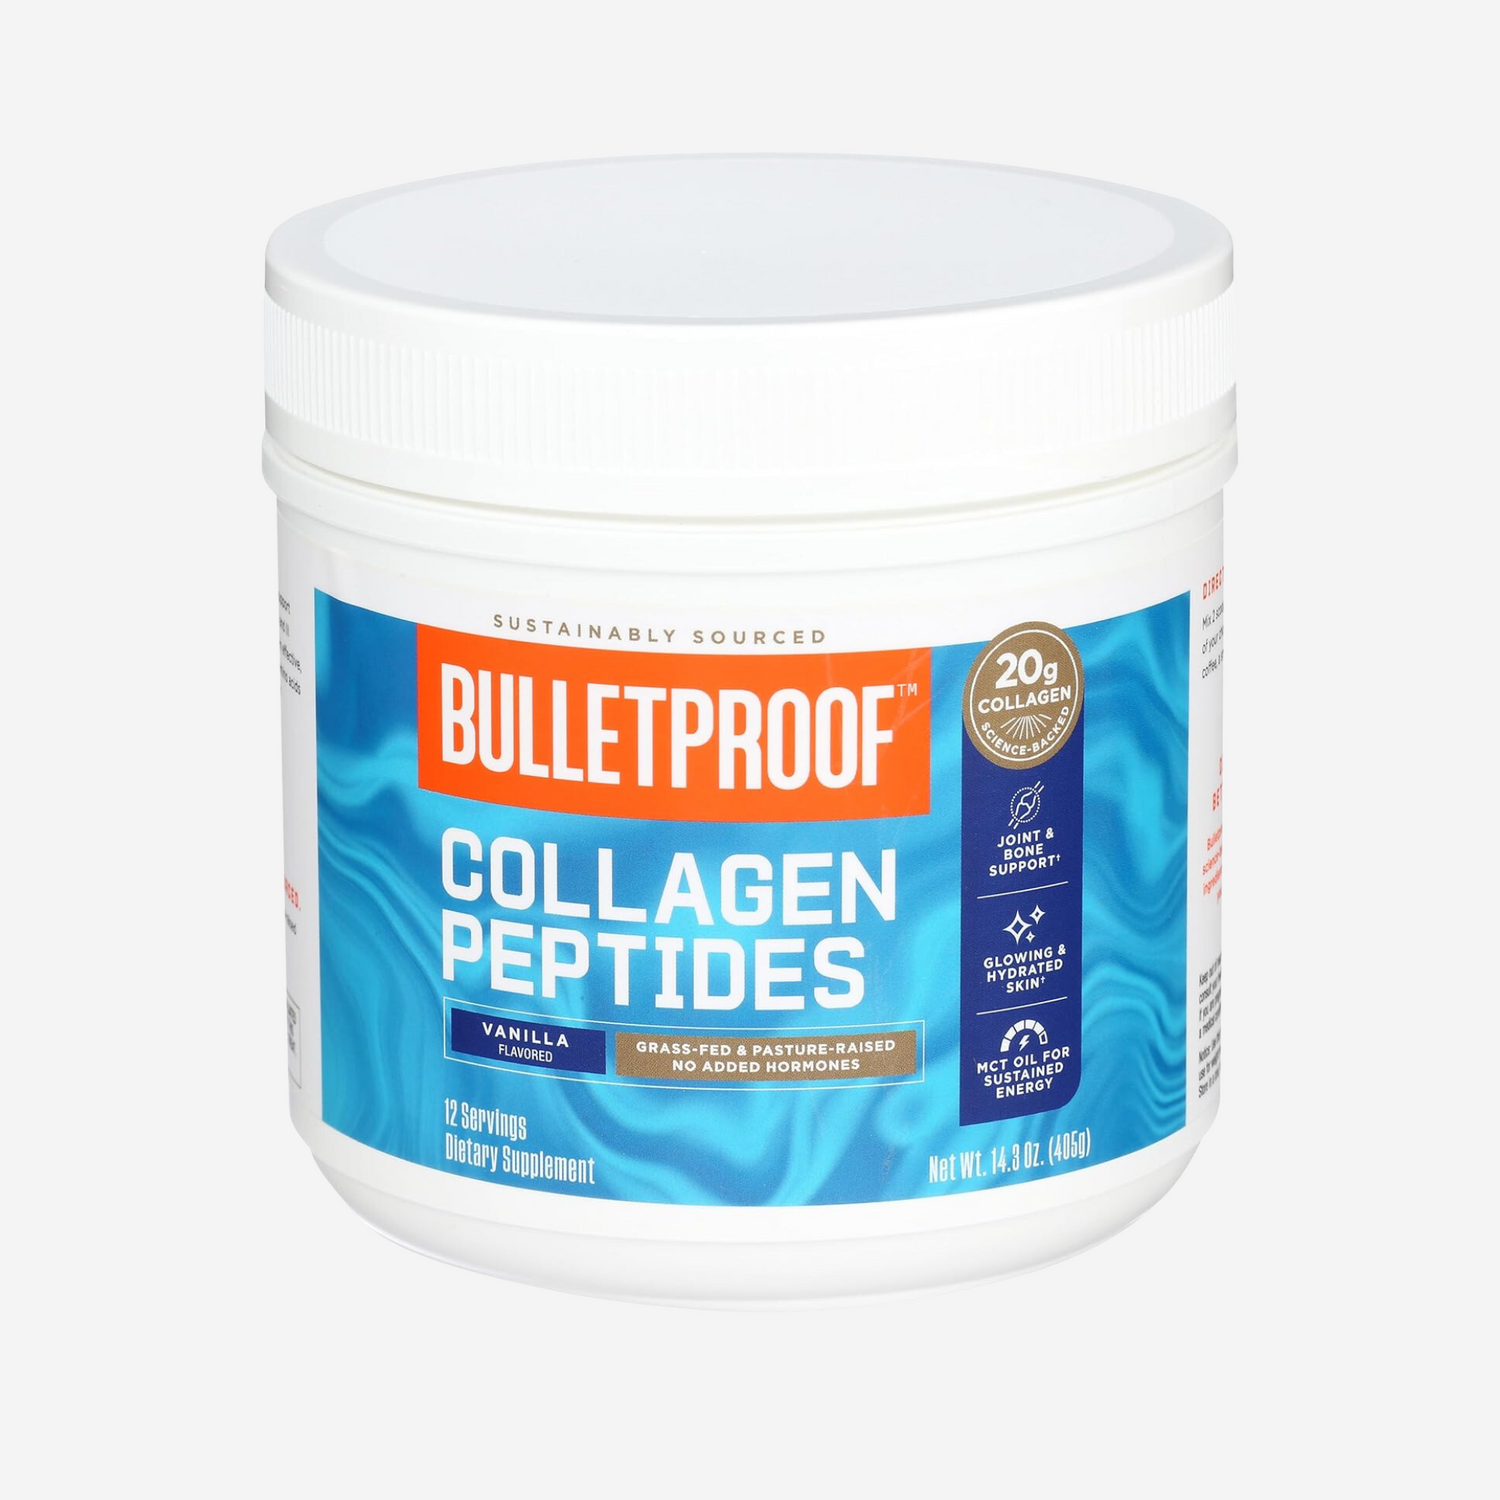 Bulletproof Vanilla Collagen Protein Powder, 14.3 OZ